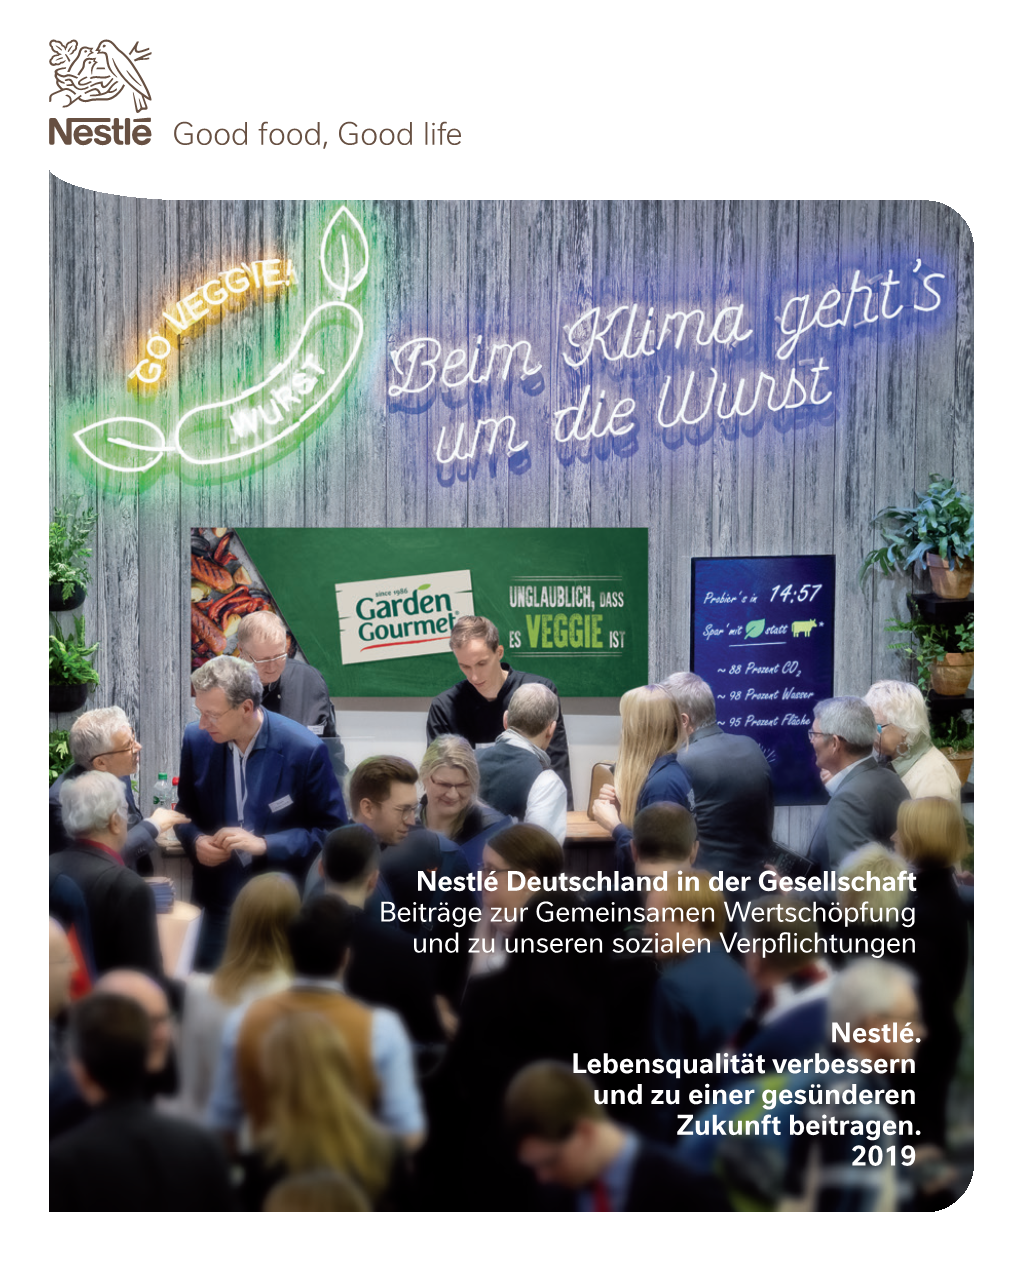 Nestlé Deutschland in Der Gesellschaft Beiträge Zur Gemeinsamen Wertschöpfung Und Zu Unseren Sozialen Verpflichtungen